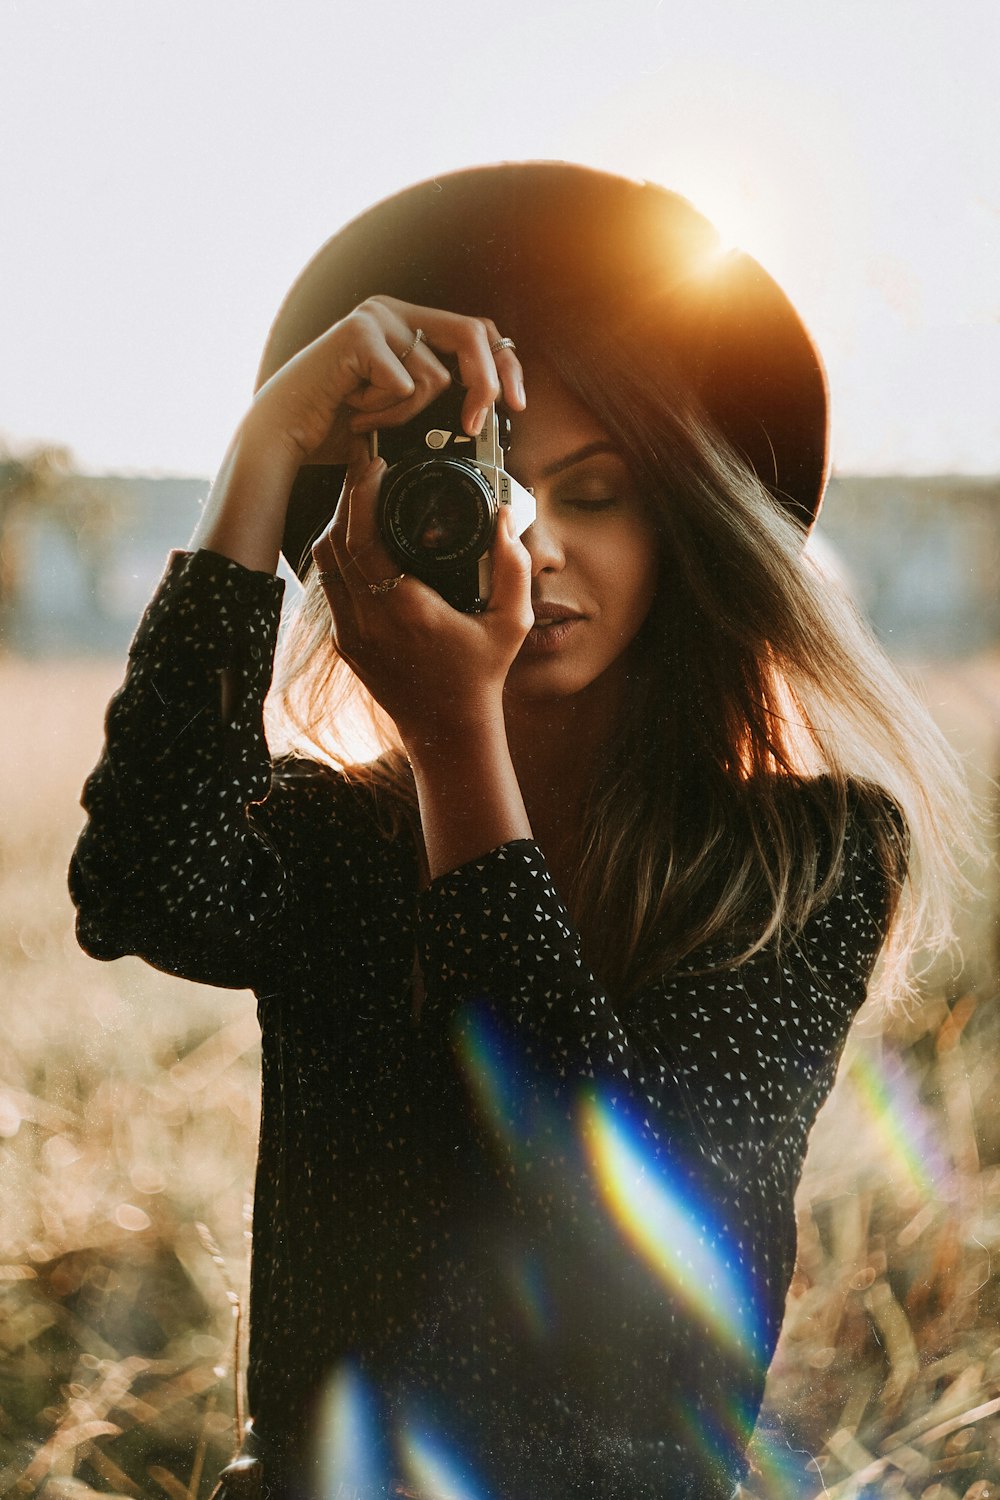 黒いデジタル一眼レフカメラを持つ黒い長袖シャツの女性